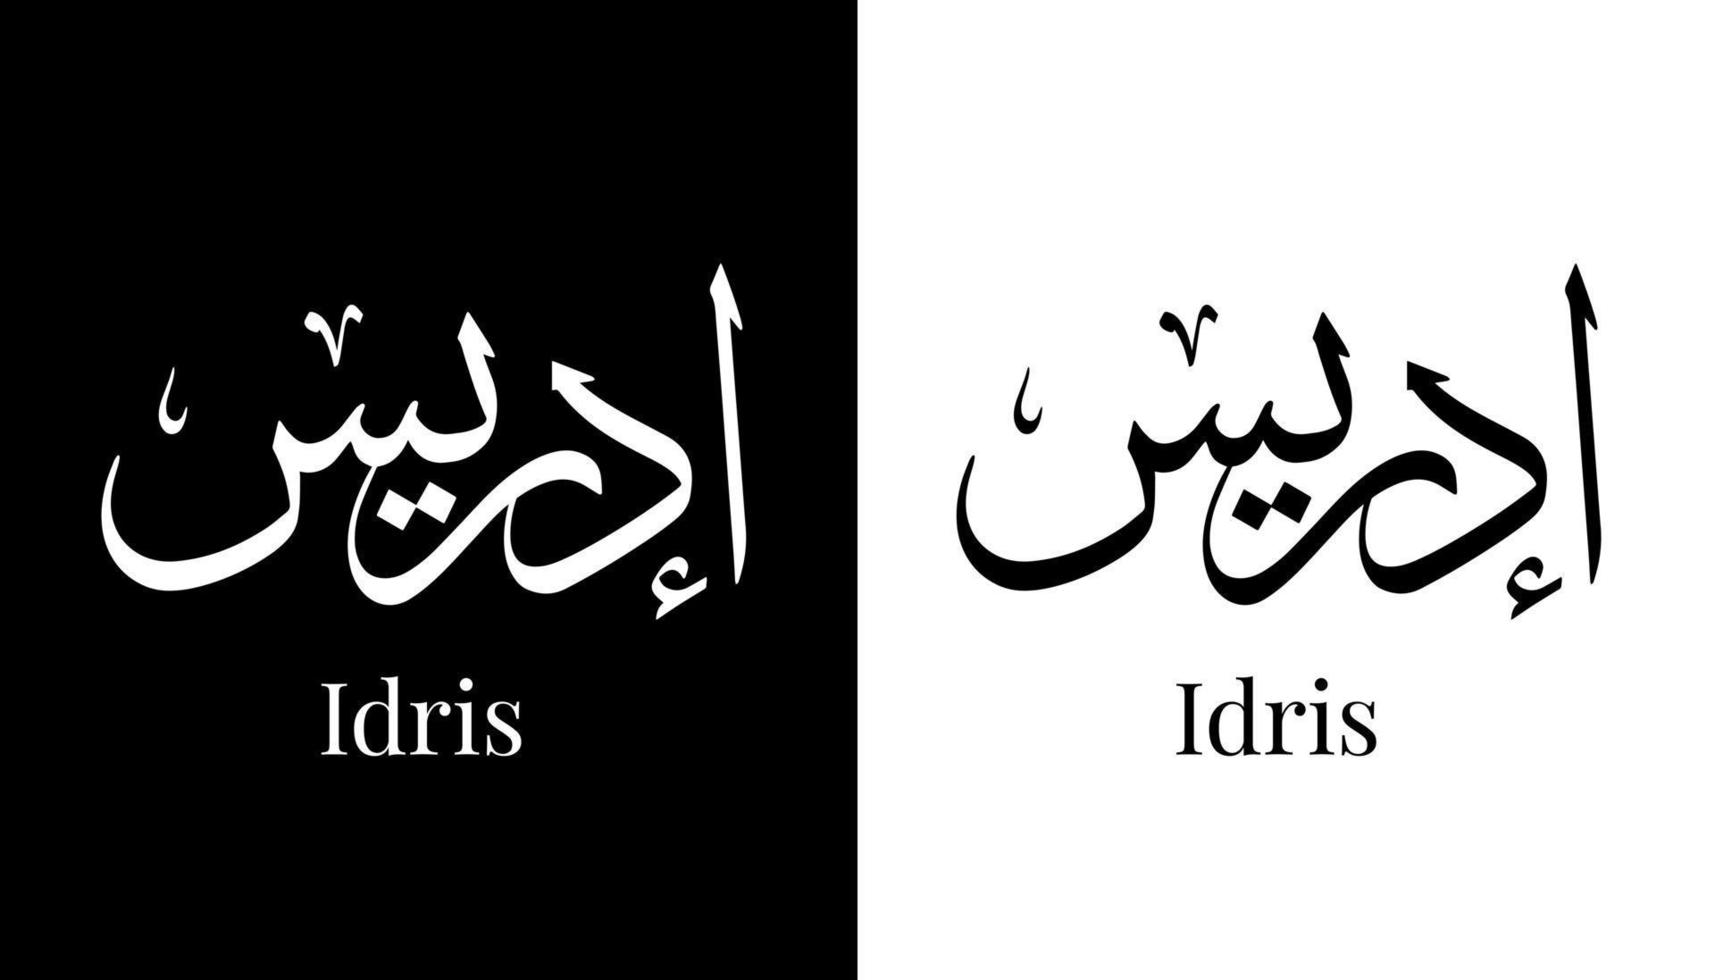 nome de caligrafia árabe traduzido 'idris' letras árabes alfabeto fonte letras ilustração em vetor logotipo islâmico